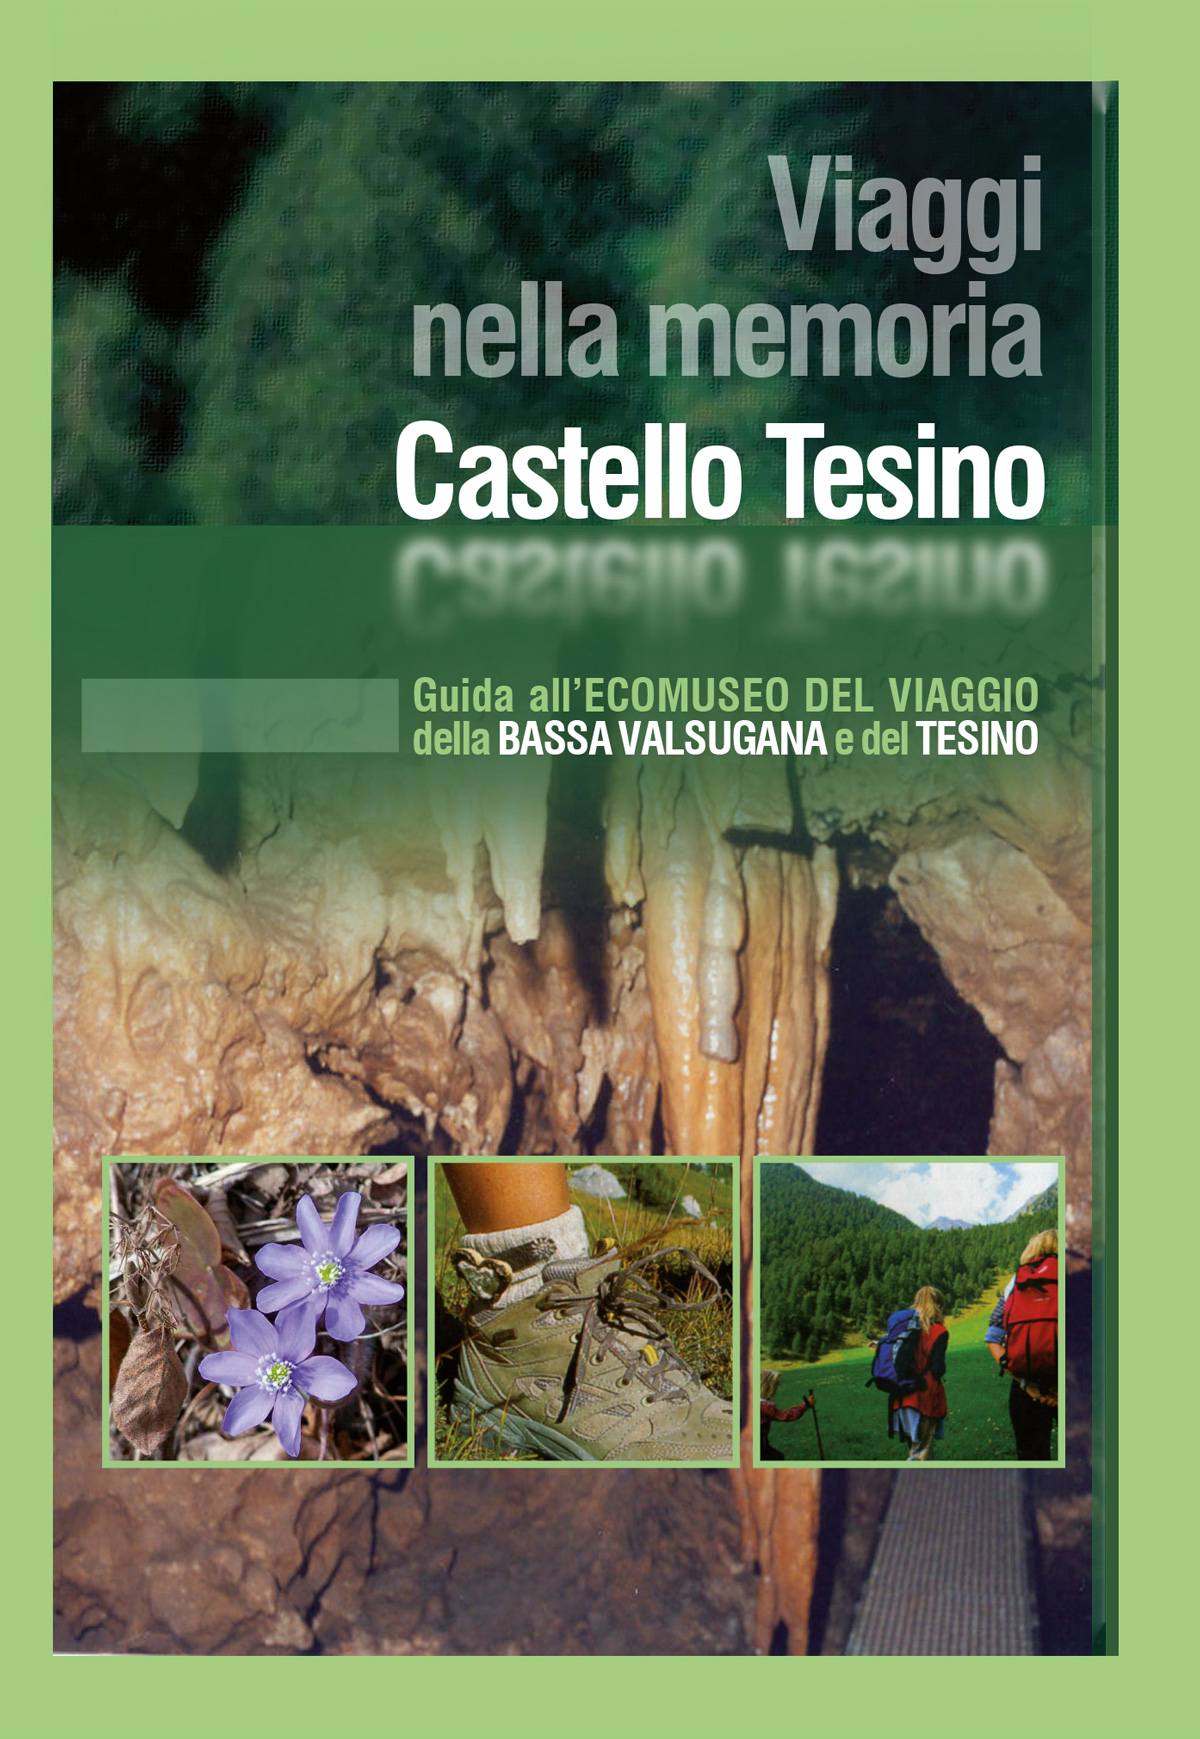 Viaggi nella memoria: Castello Tesino